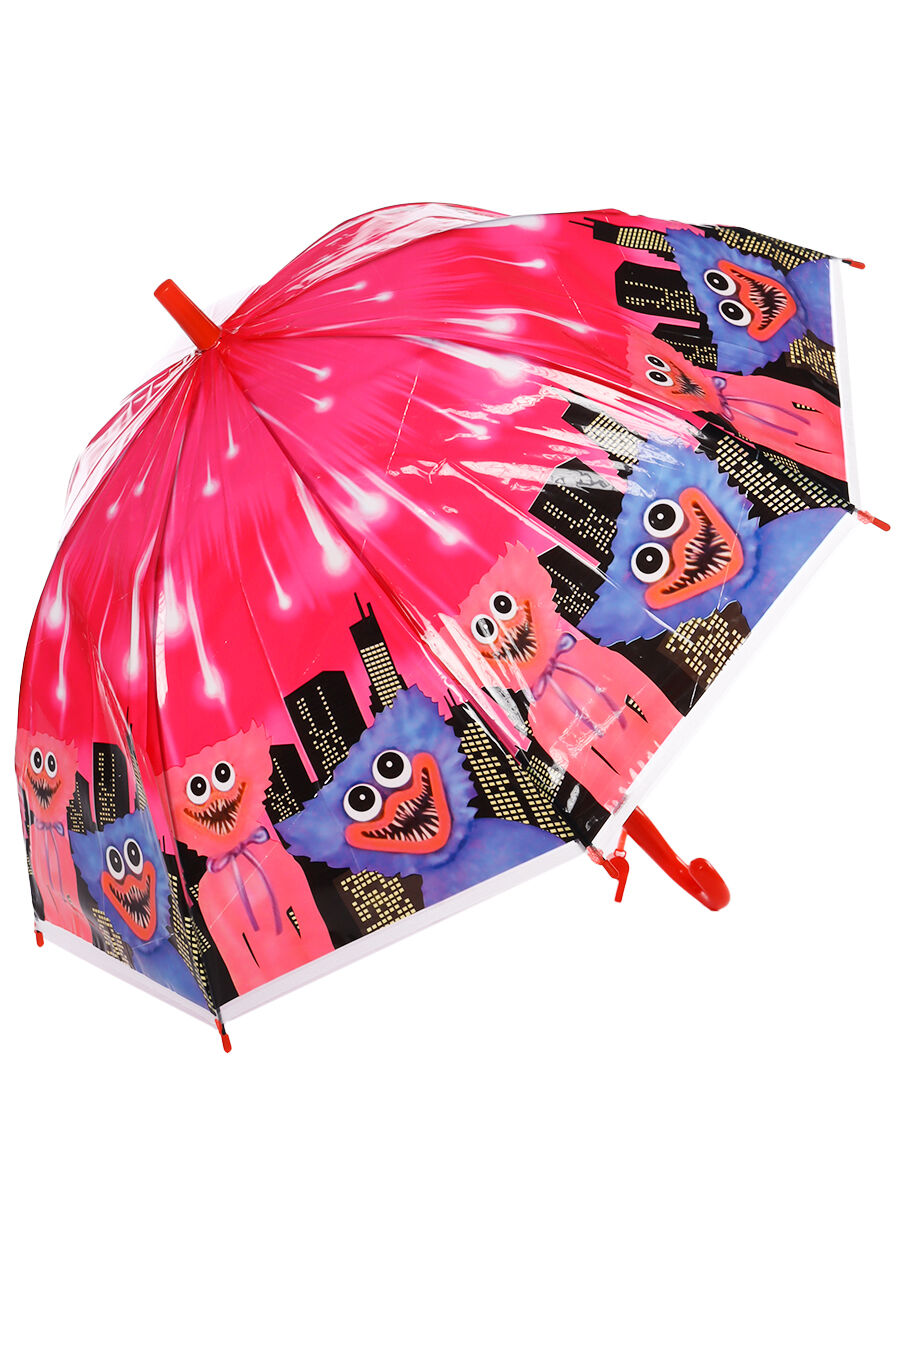 Зонт дет. Panda 204-1 полуавтомат трость (розовый)